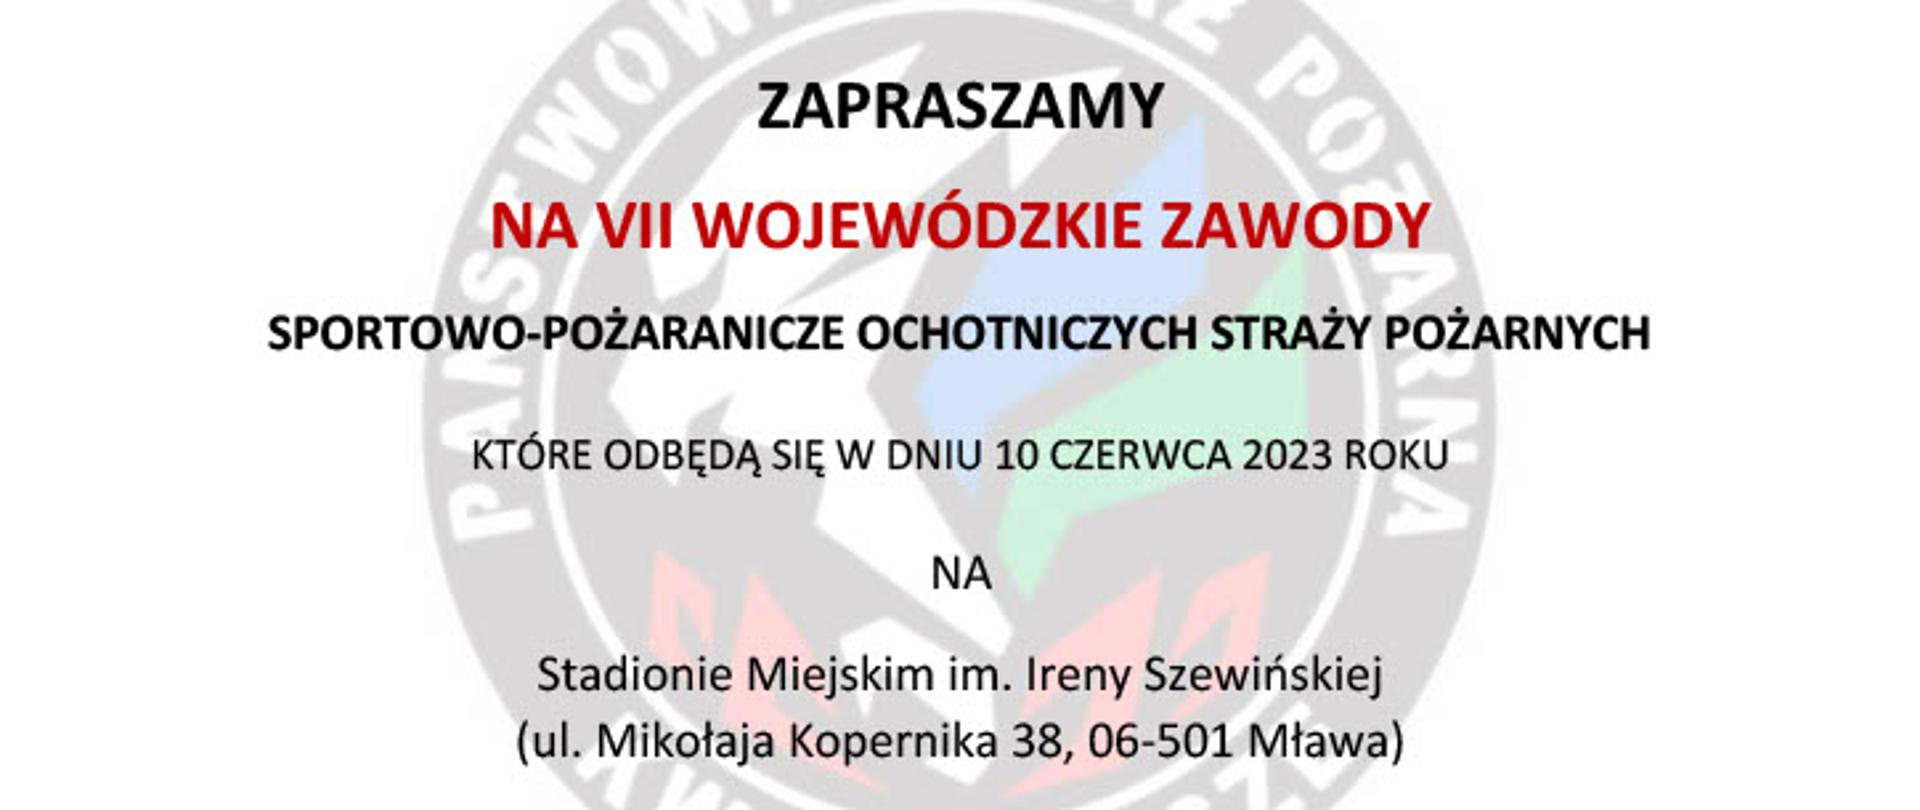 Zaproszenie na VII Wojewódzkie Zawody Sportowo-Pożarnicze Ochotniczych Straży Pożarnych w Mławie